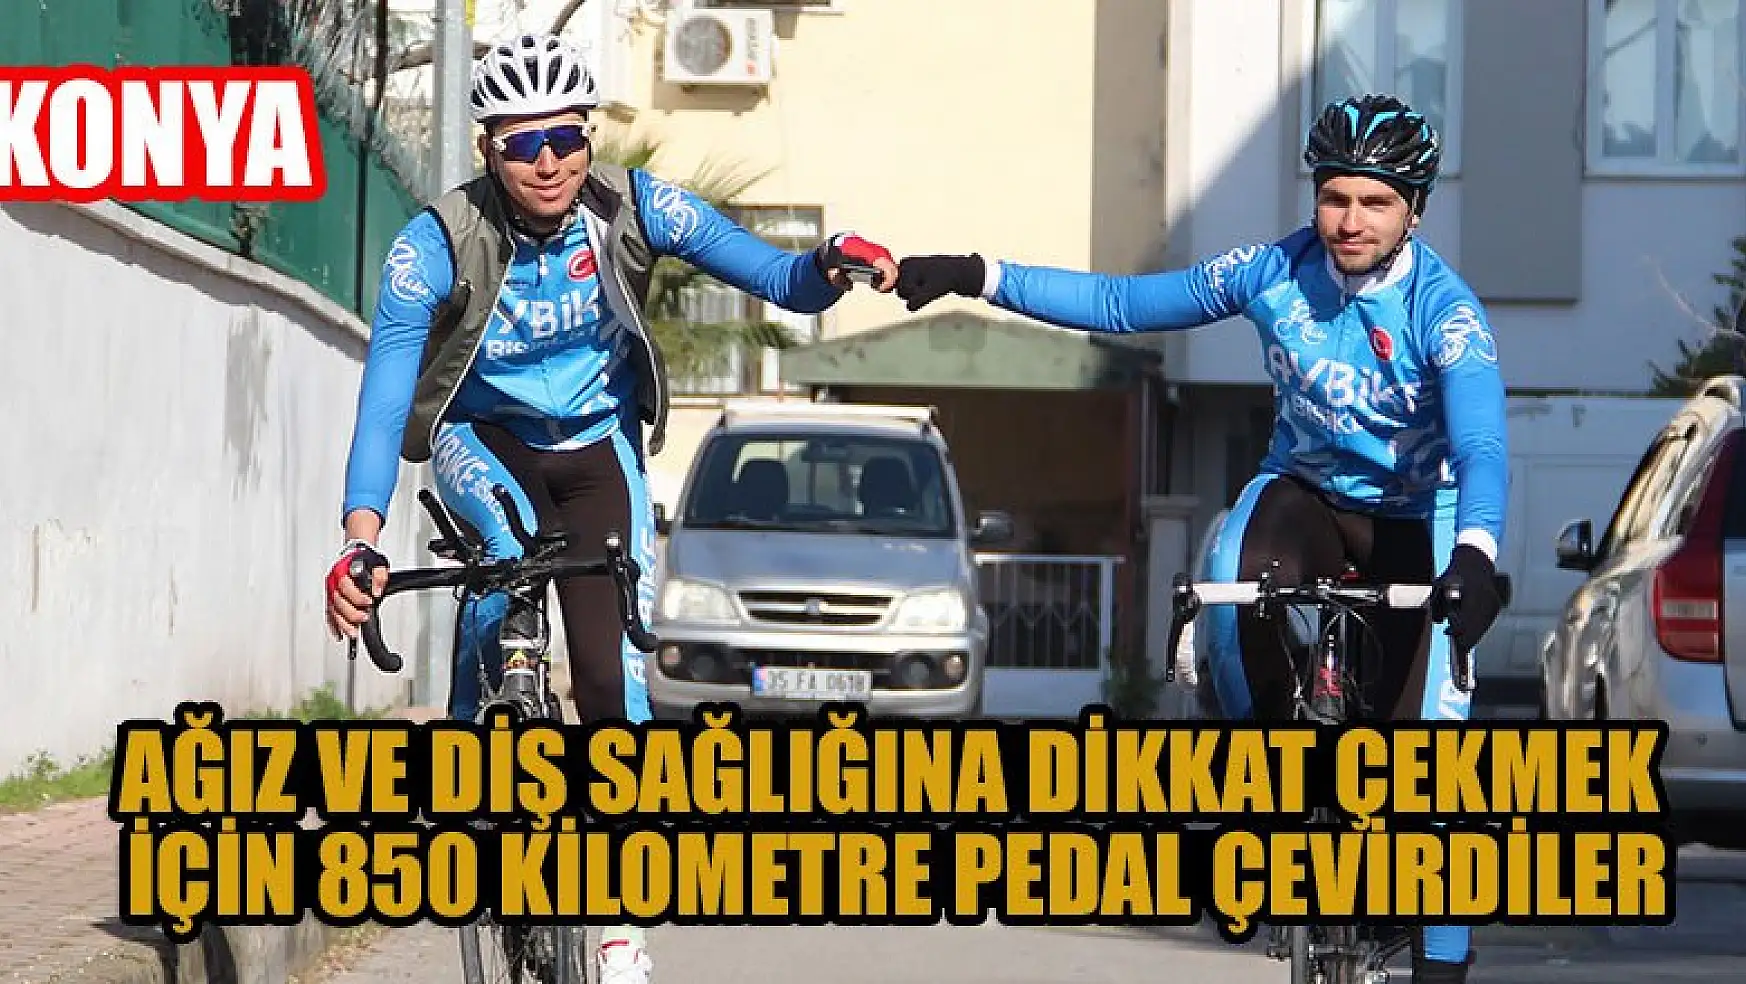 Konya'da iki öğrenci, ağız ve diş sağlığına dikkat çekmek için 850 kilometre pedalladı